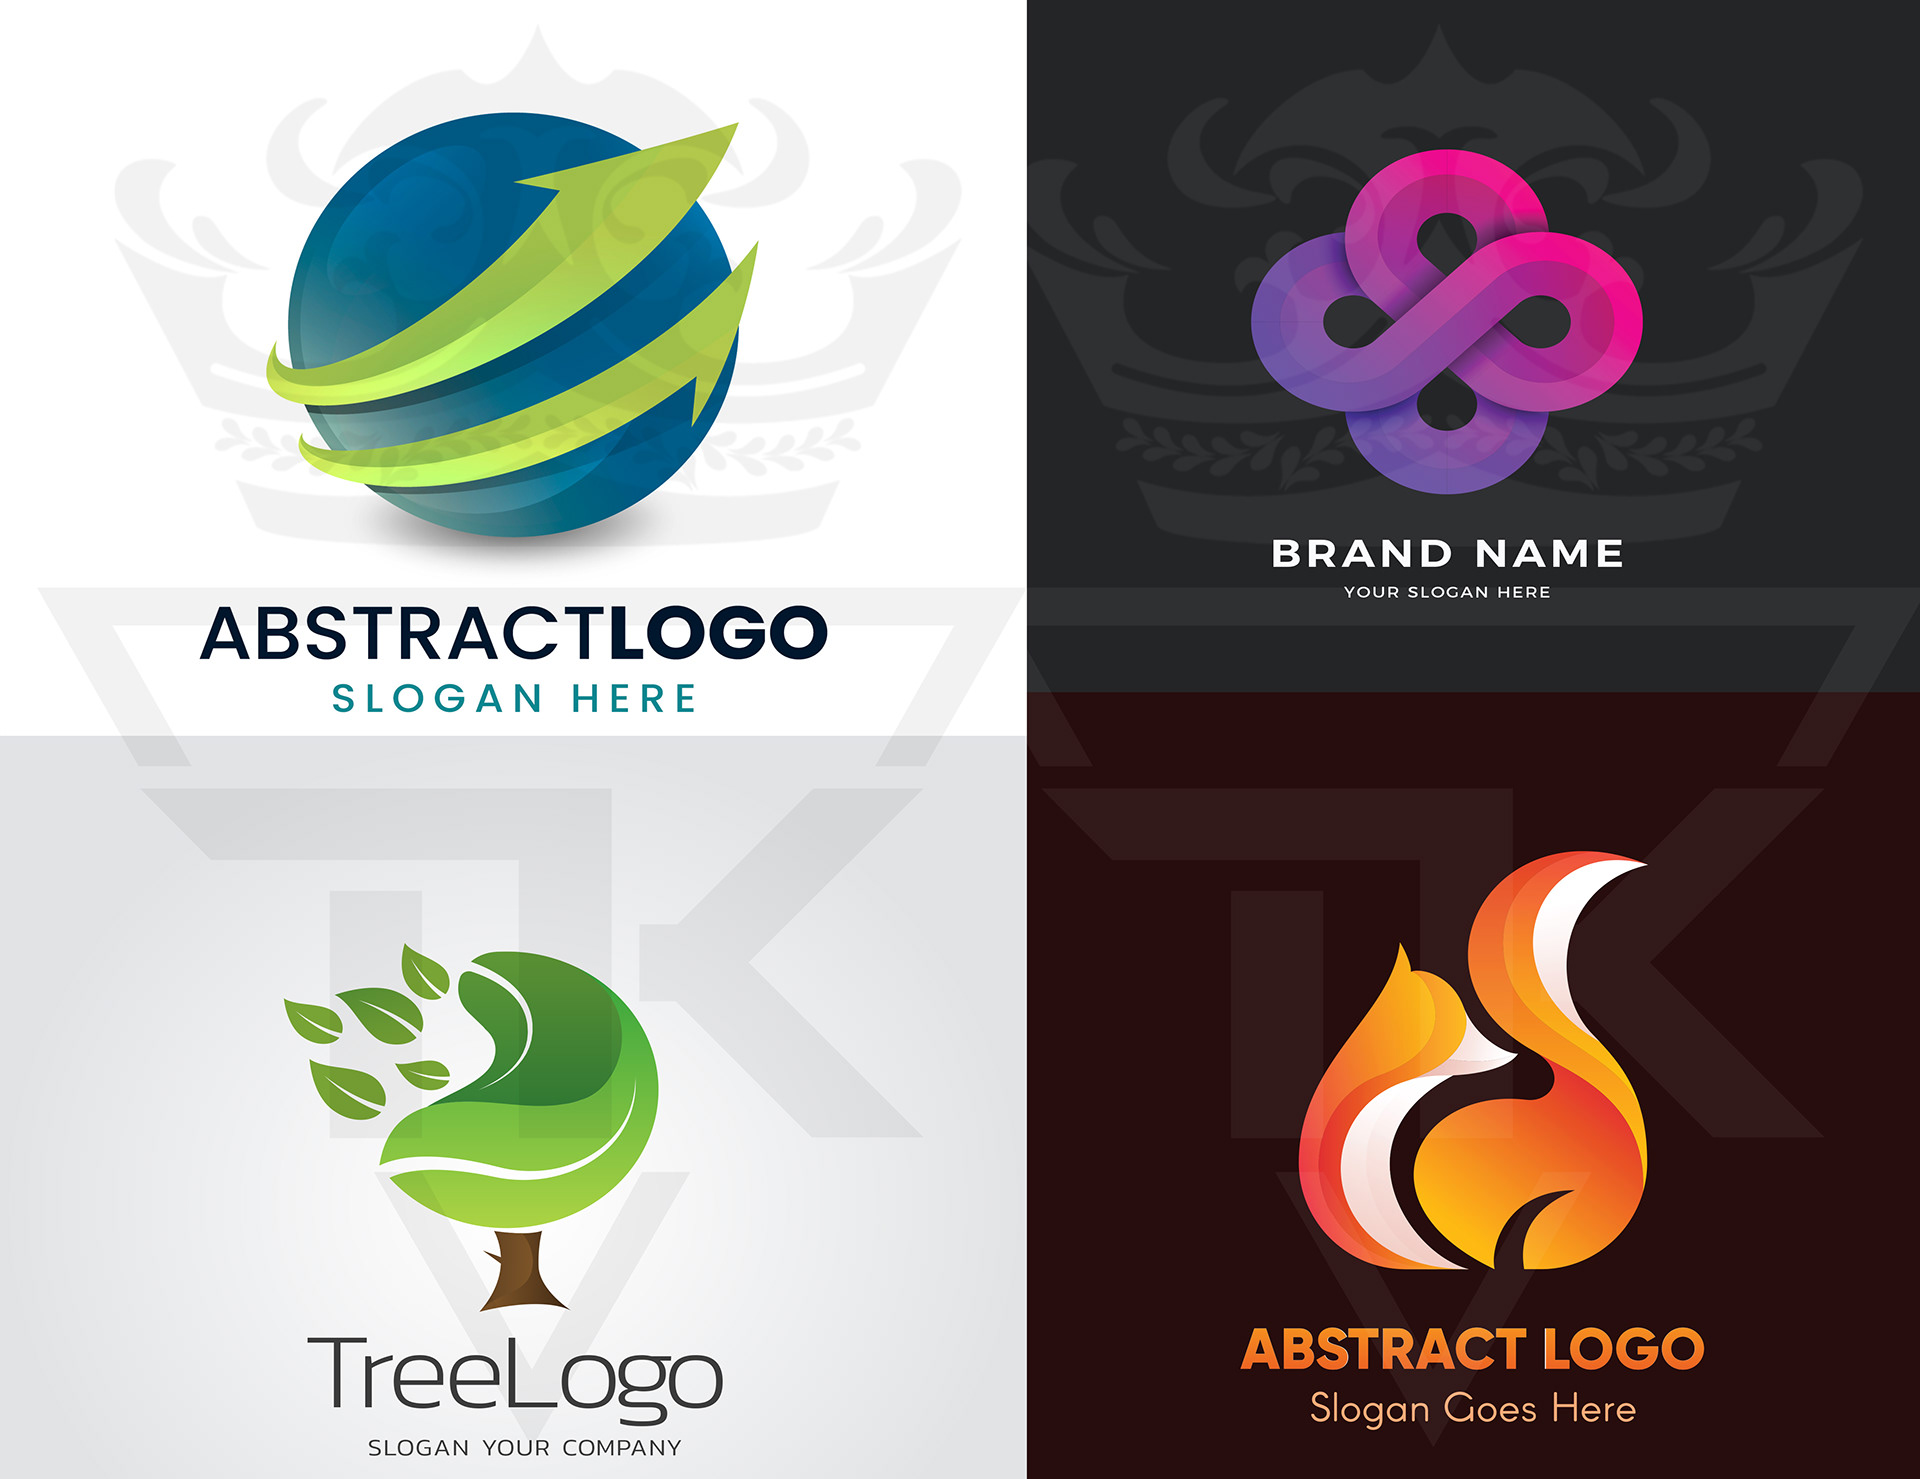 online free logo design tool